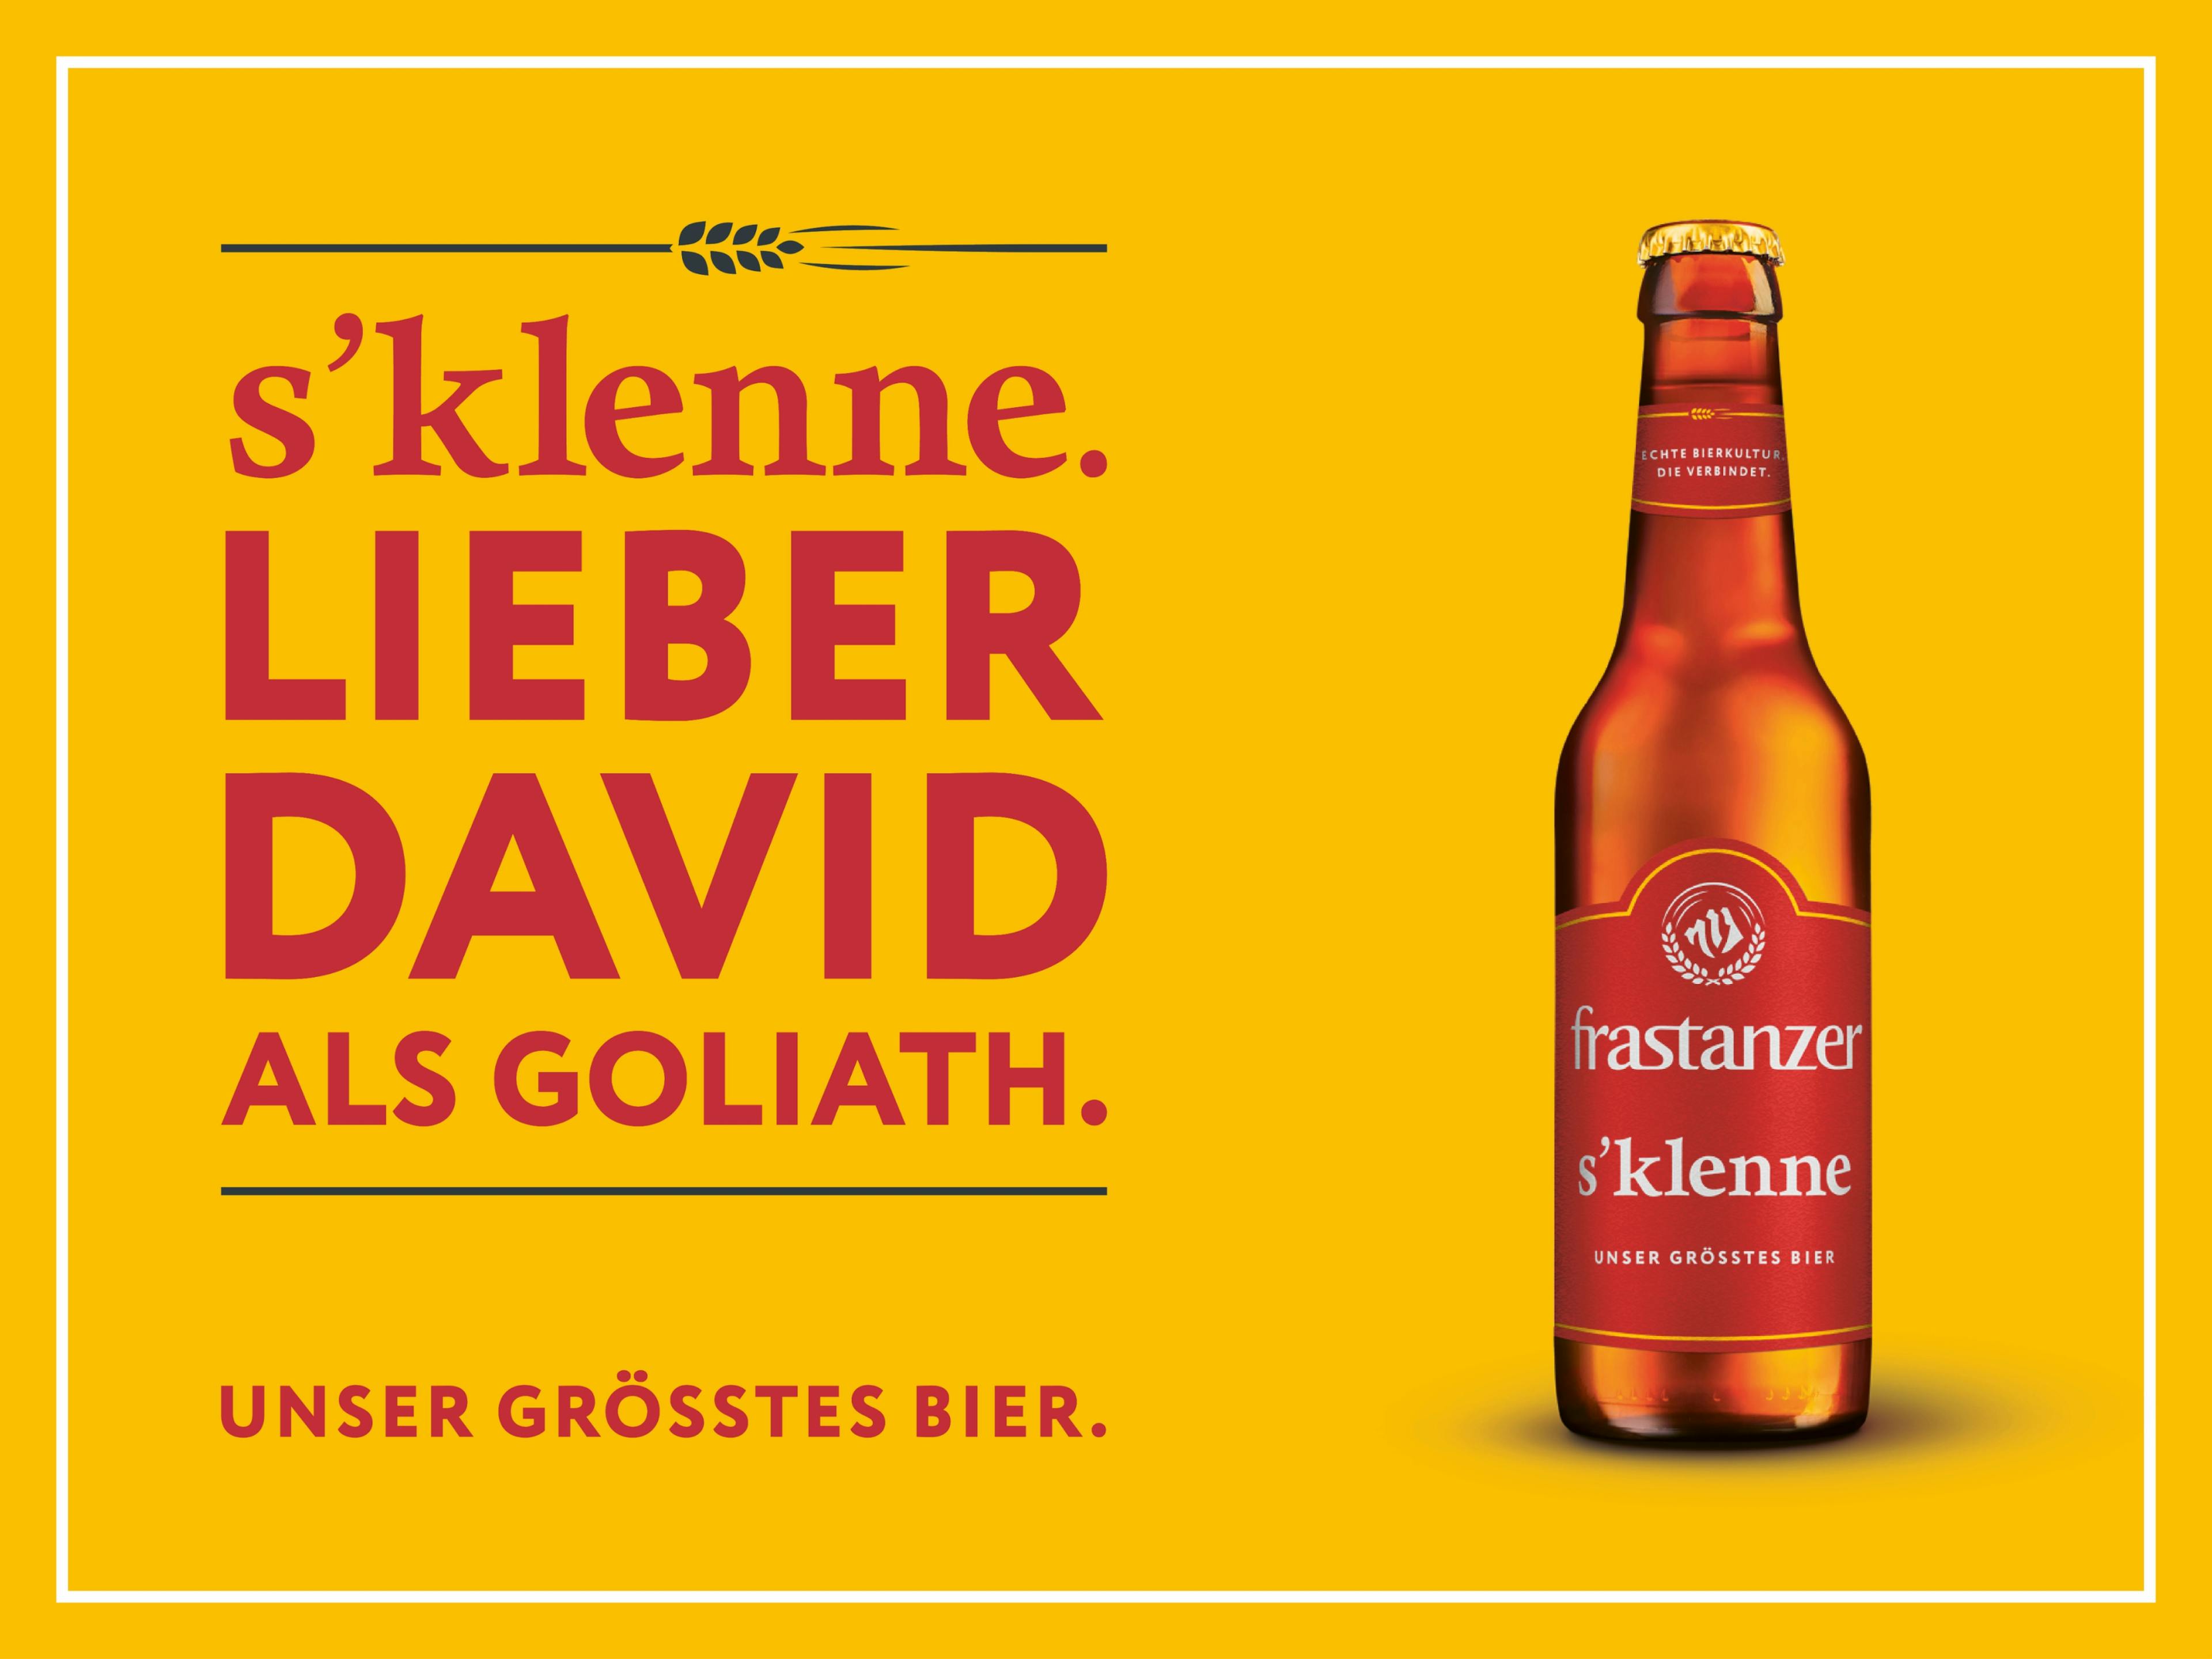 frastanzer s’klenne Bierflasche auf gelbem Hintergrund mit großer Headline: Lieber David als Goliath © gobiq